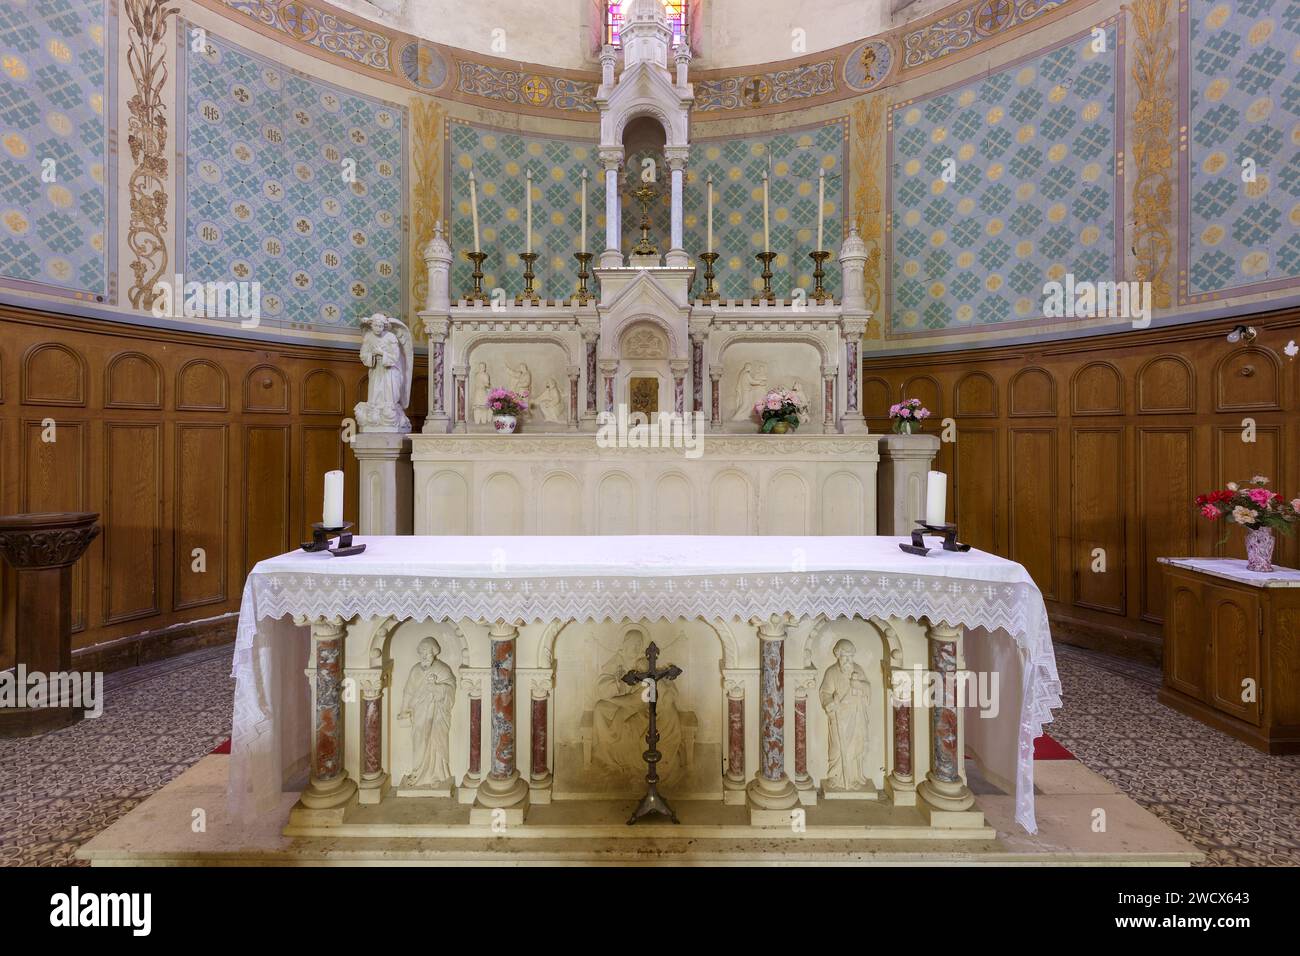 France, Meurthe et Moselle, Abaucourt sur Seille, église de la Nativité de la Vierge reconstruite entre 1920 et 1925 après sa destruction pendant la première Guerre mondiale, autel dans le chœur Banque D'Images